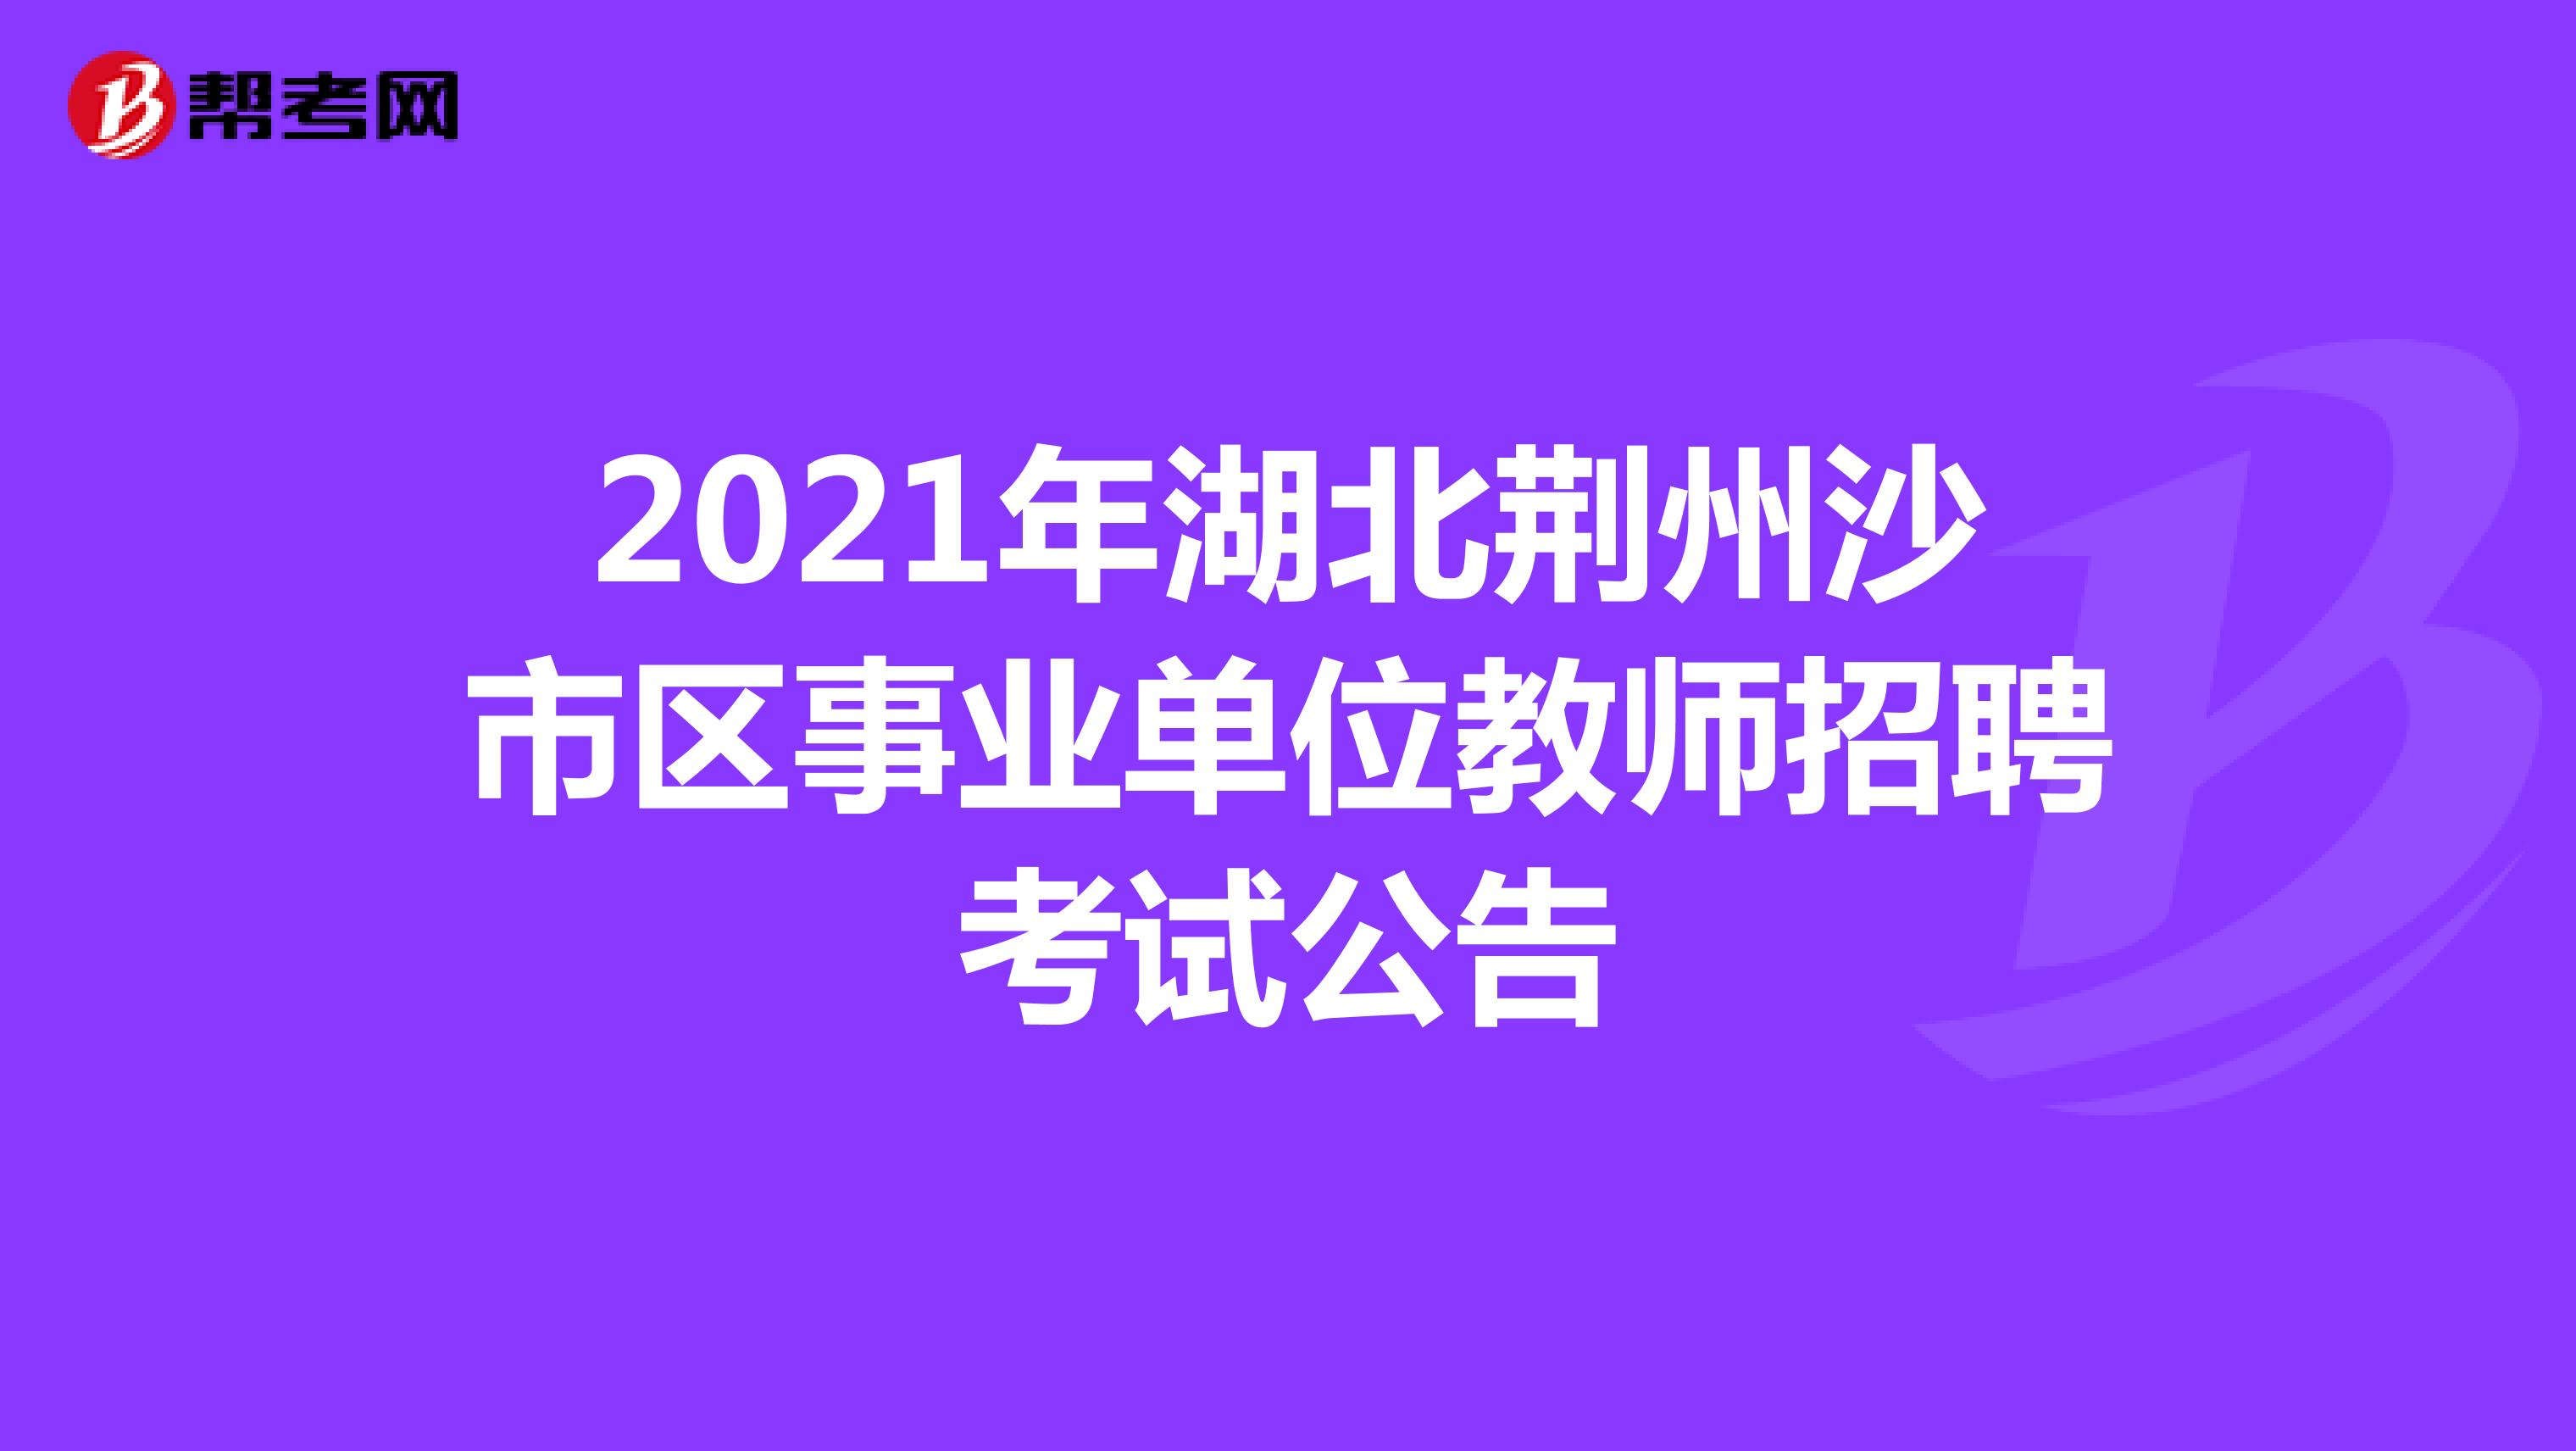 2021年湖北荆州沙市区事业单位教师招聘考试公告